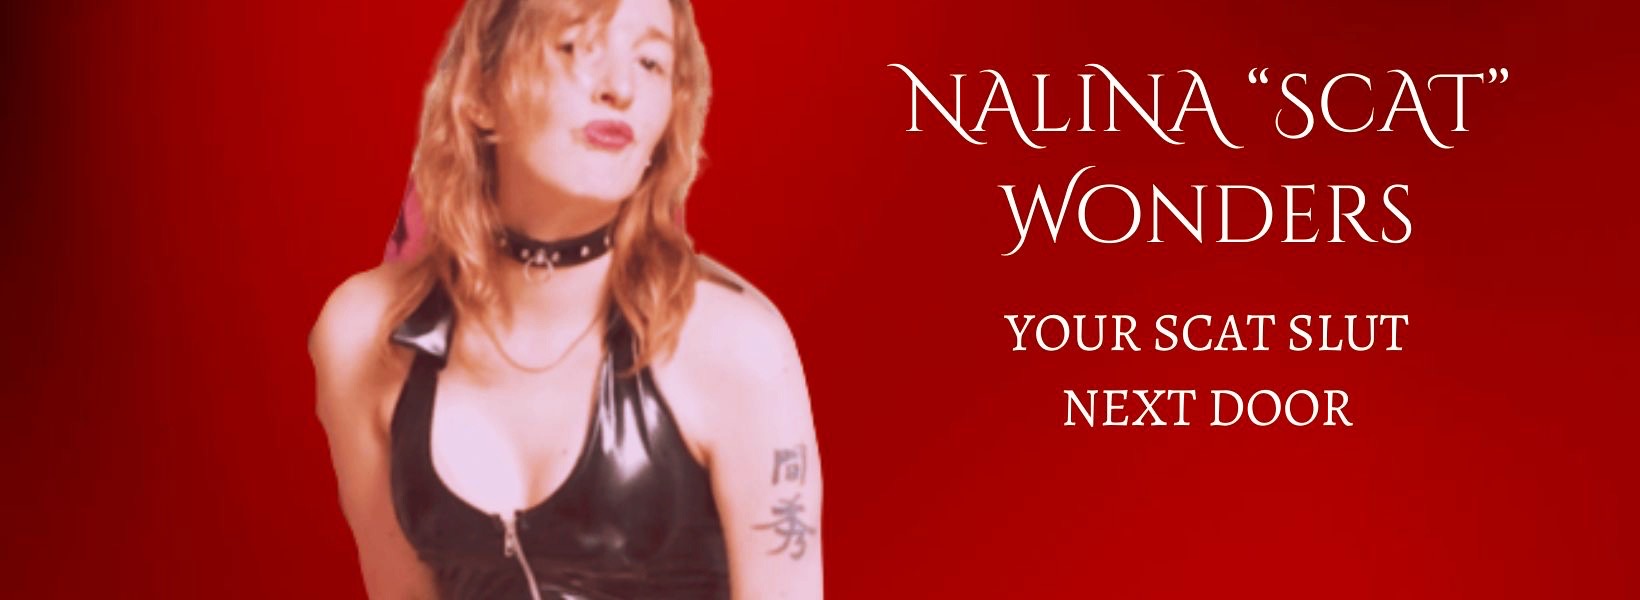 Scat pornstar Nalina Scat Wonders - Your scat slut next door